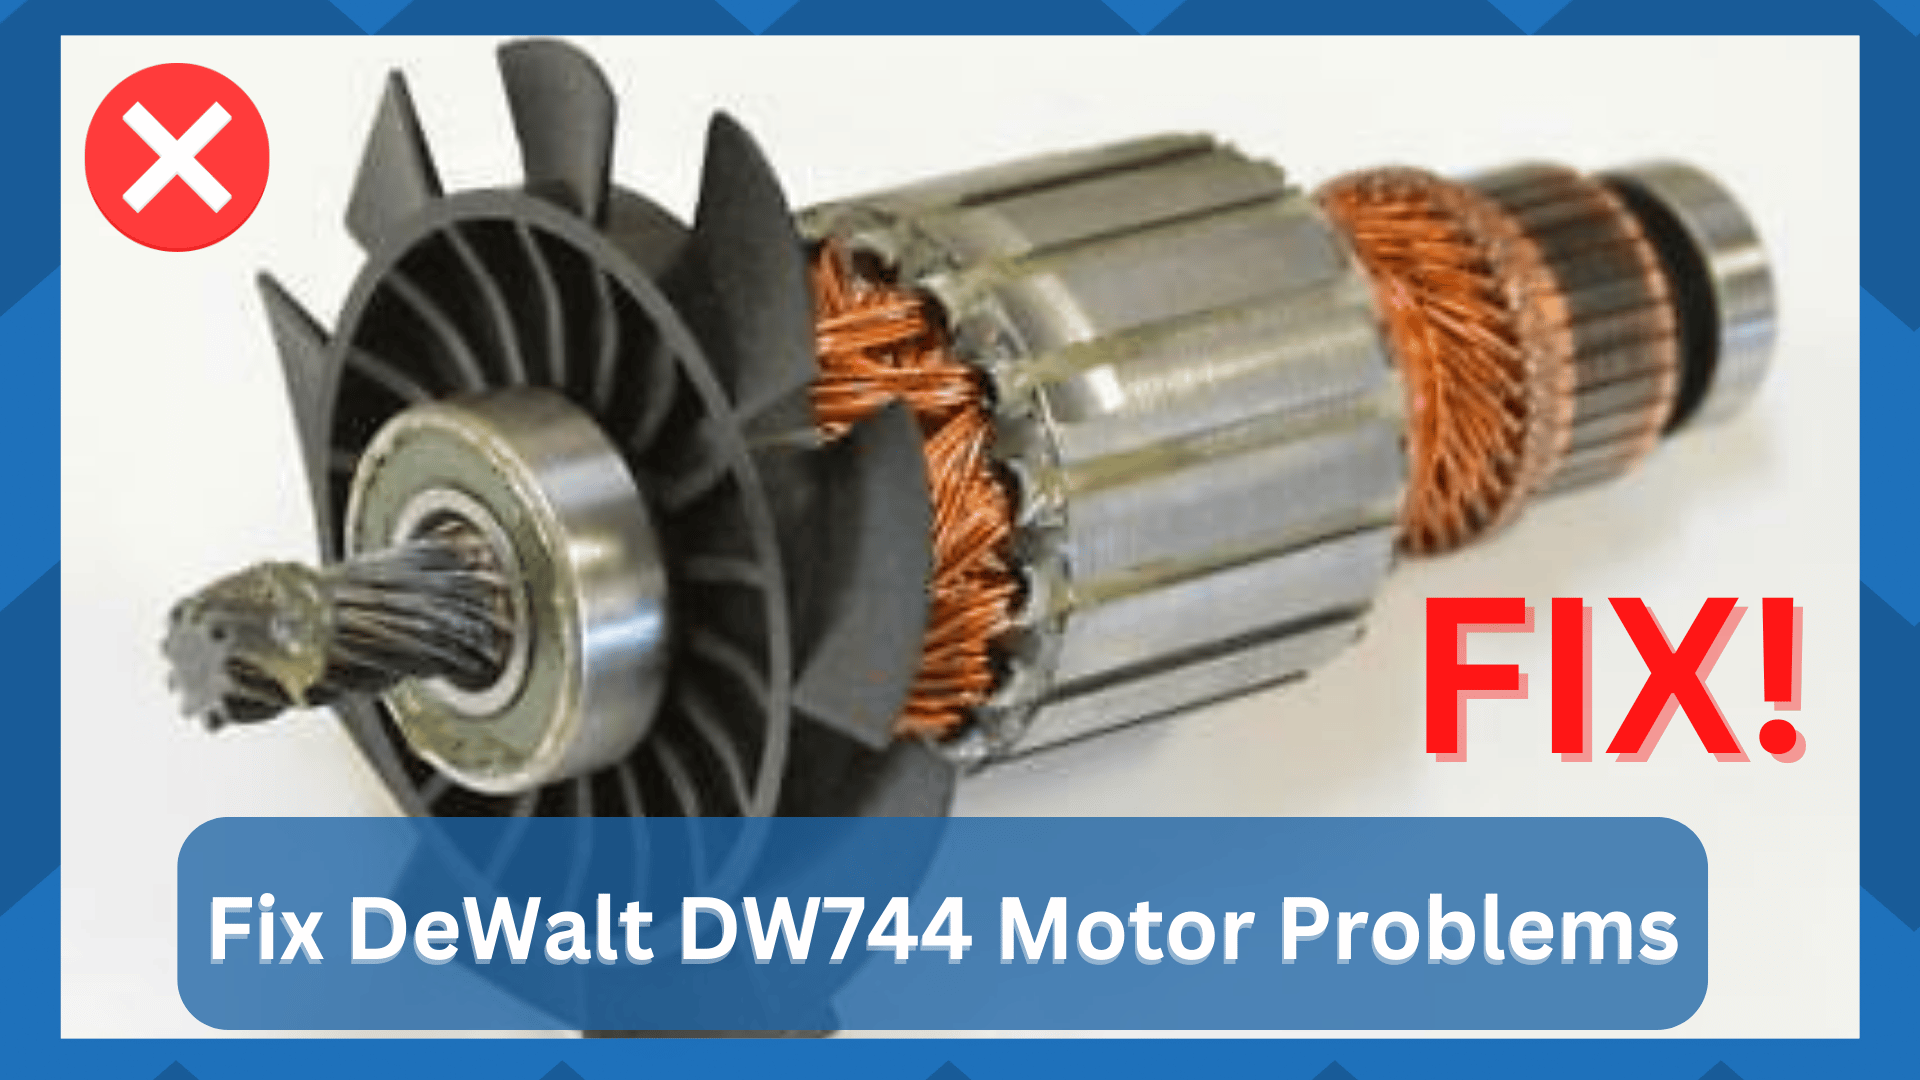 dewalt dw744 motor problems